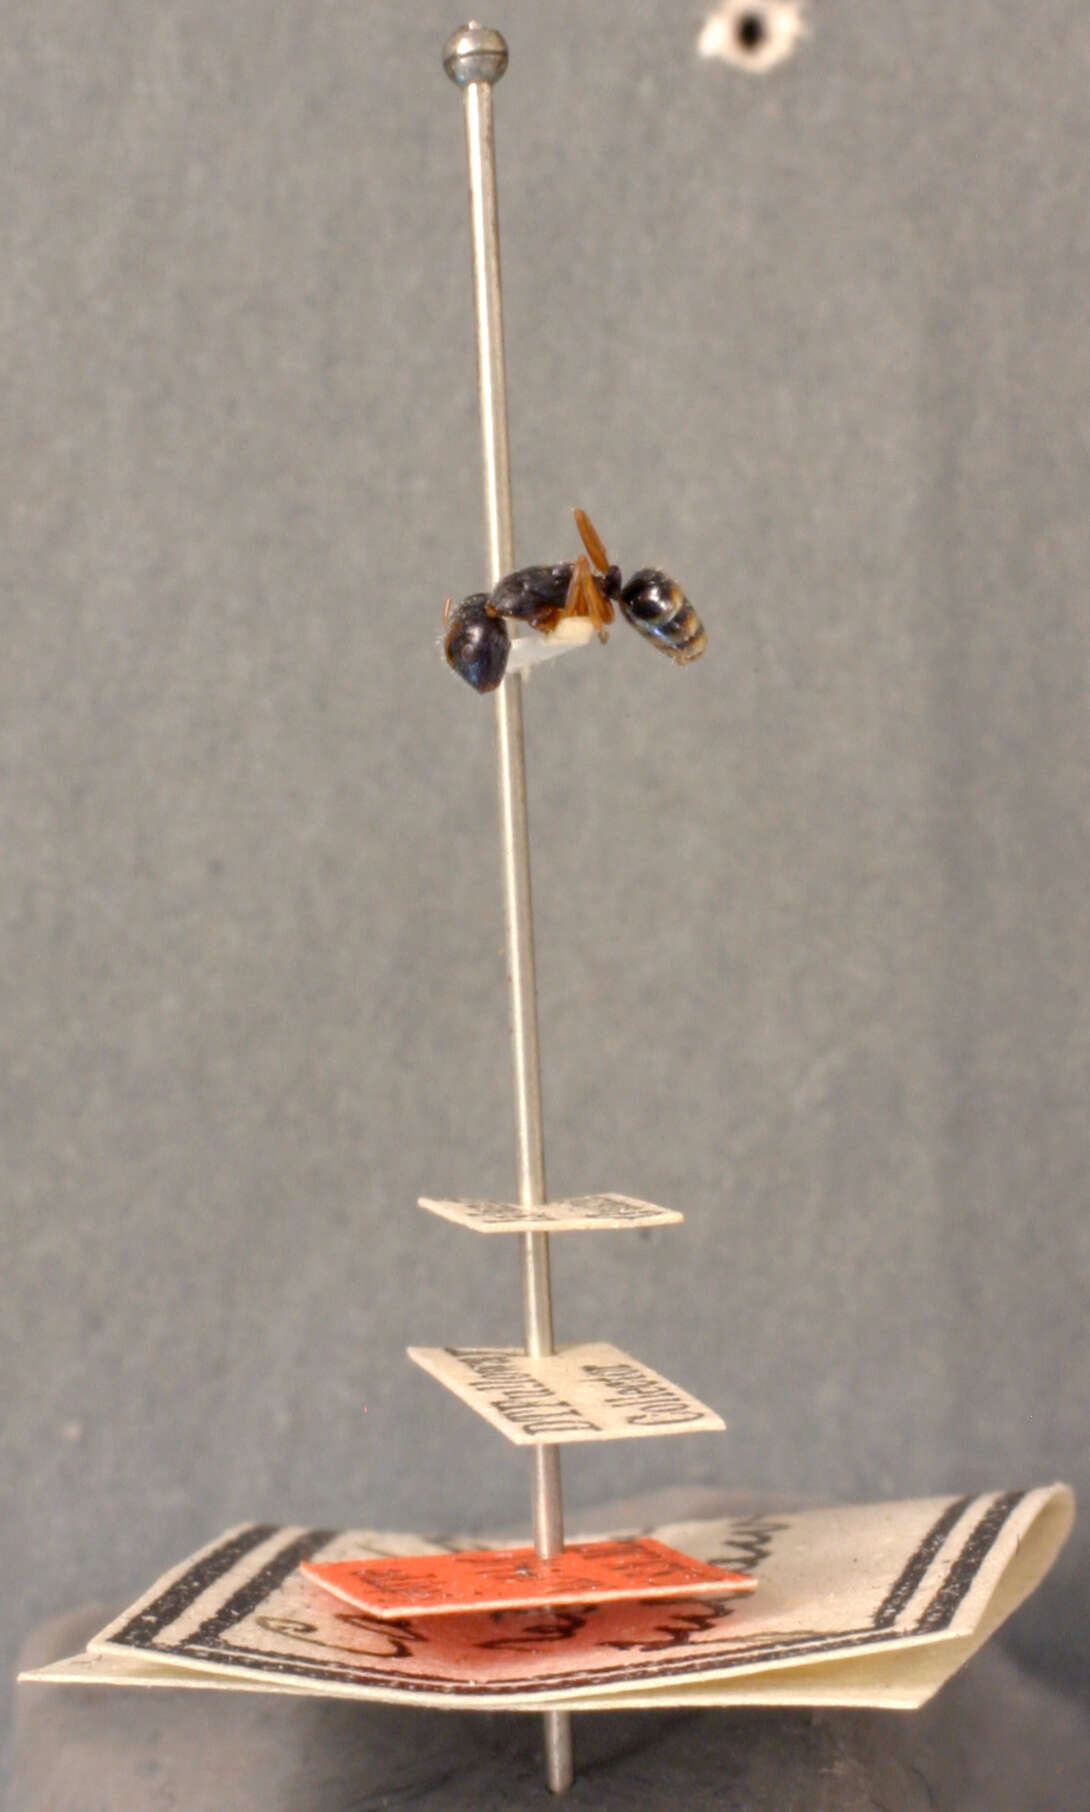 Image of Camponotus reticulatus fullawayi Wheeler 1912